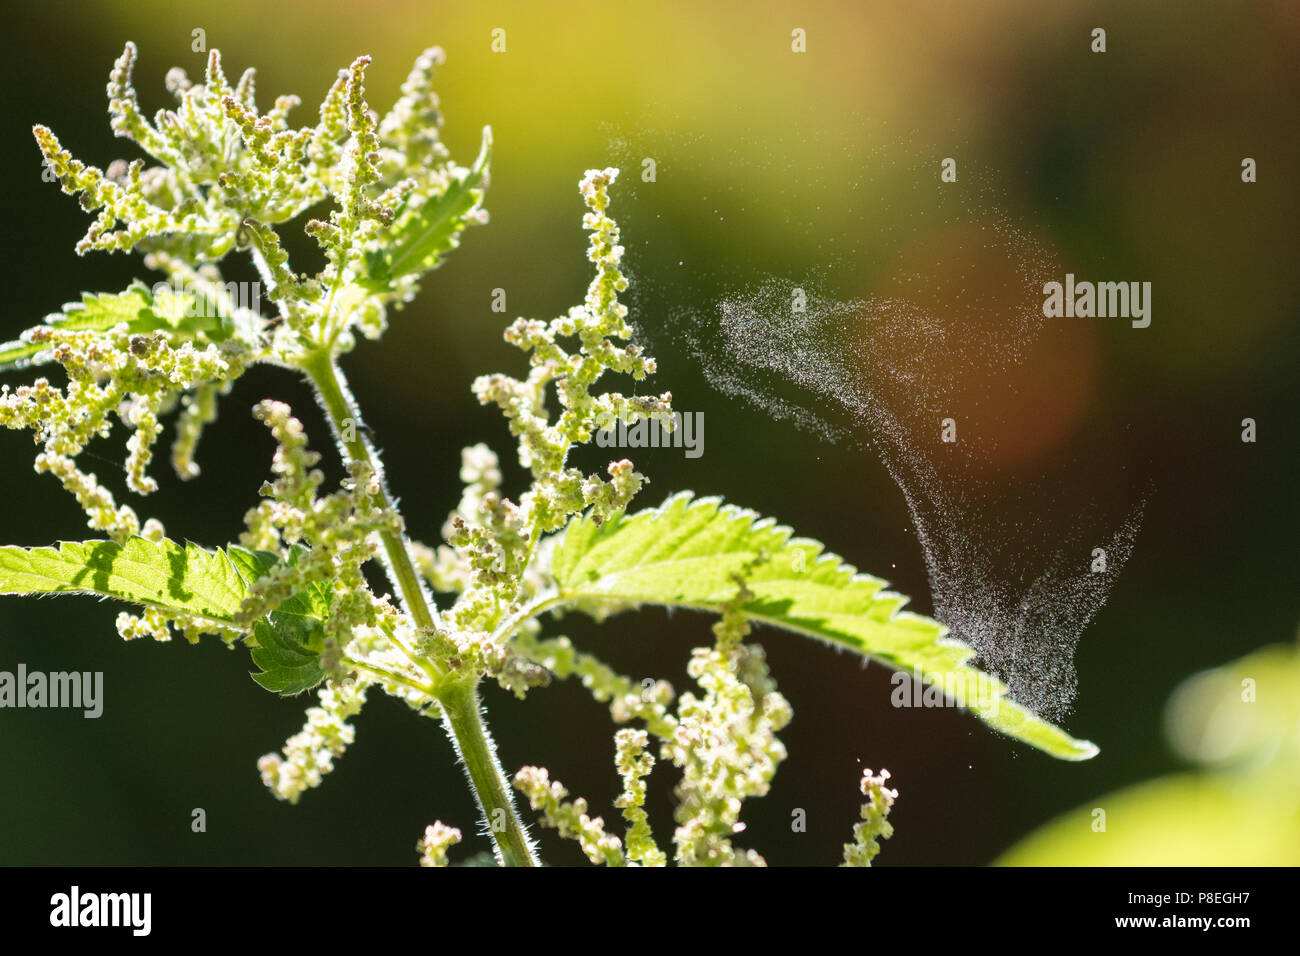 El viento la polinización, dispersión del polen por catapulta - ortiga (Urtica dioica) arrojar el polen en un día seco Foto de stock